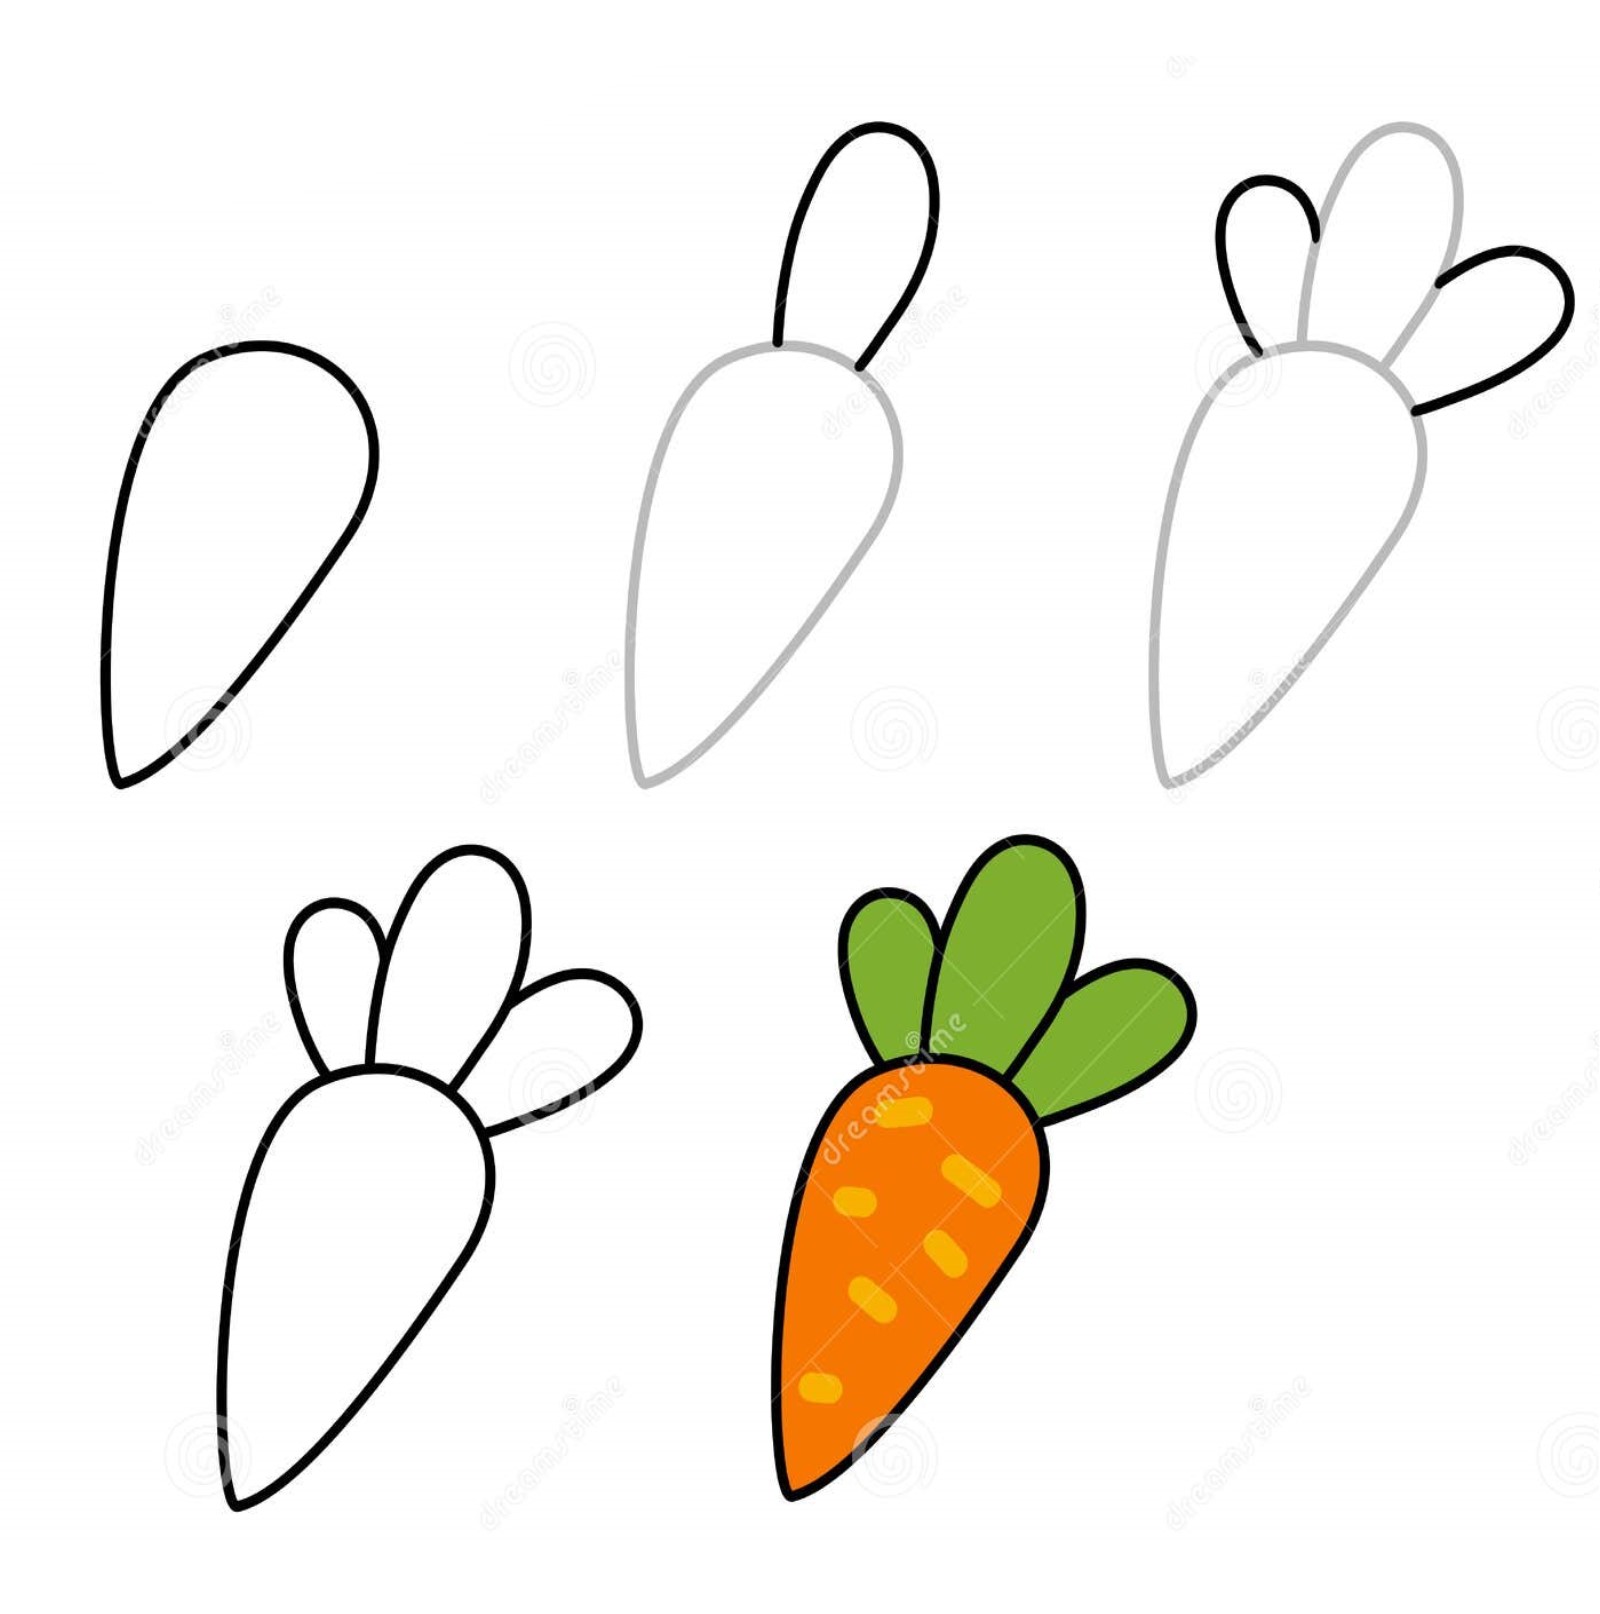 Karotten-Idee 16 zeichnen ideen